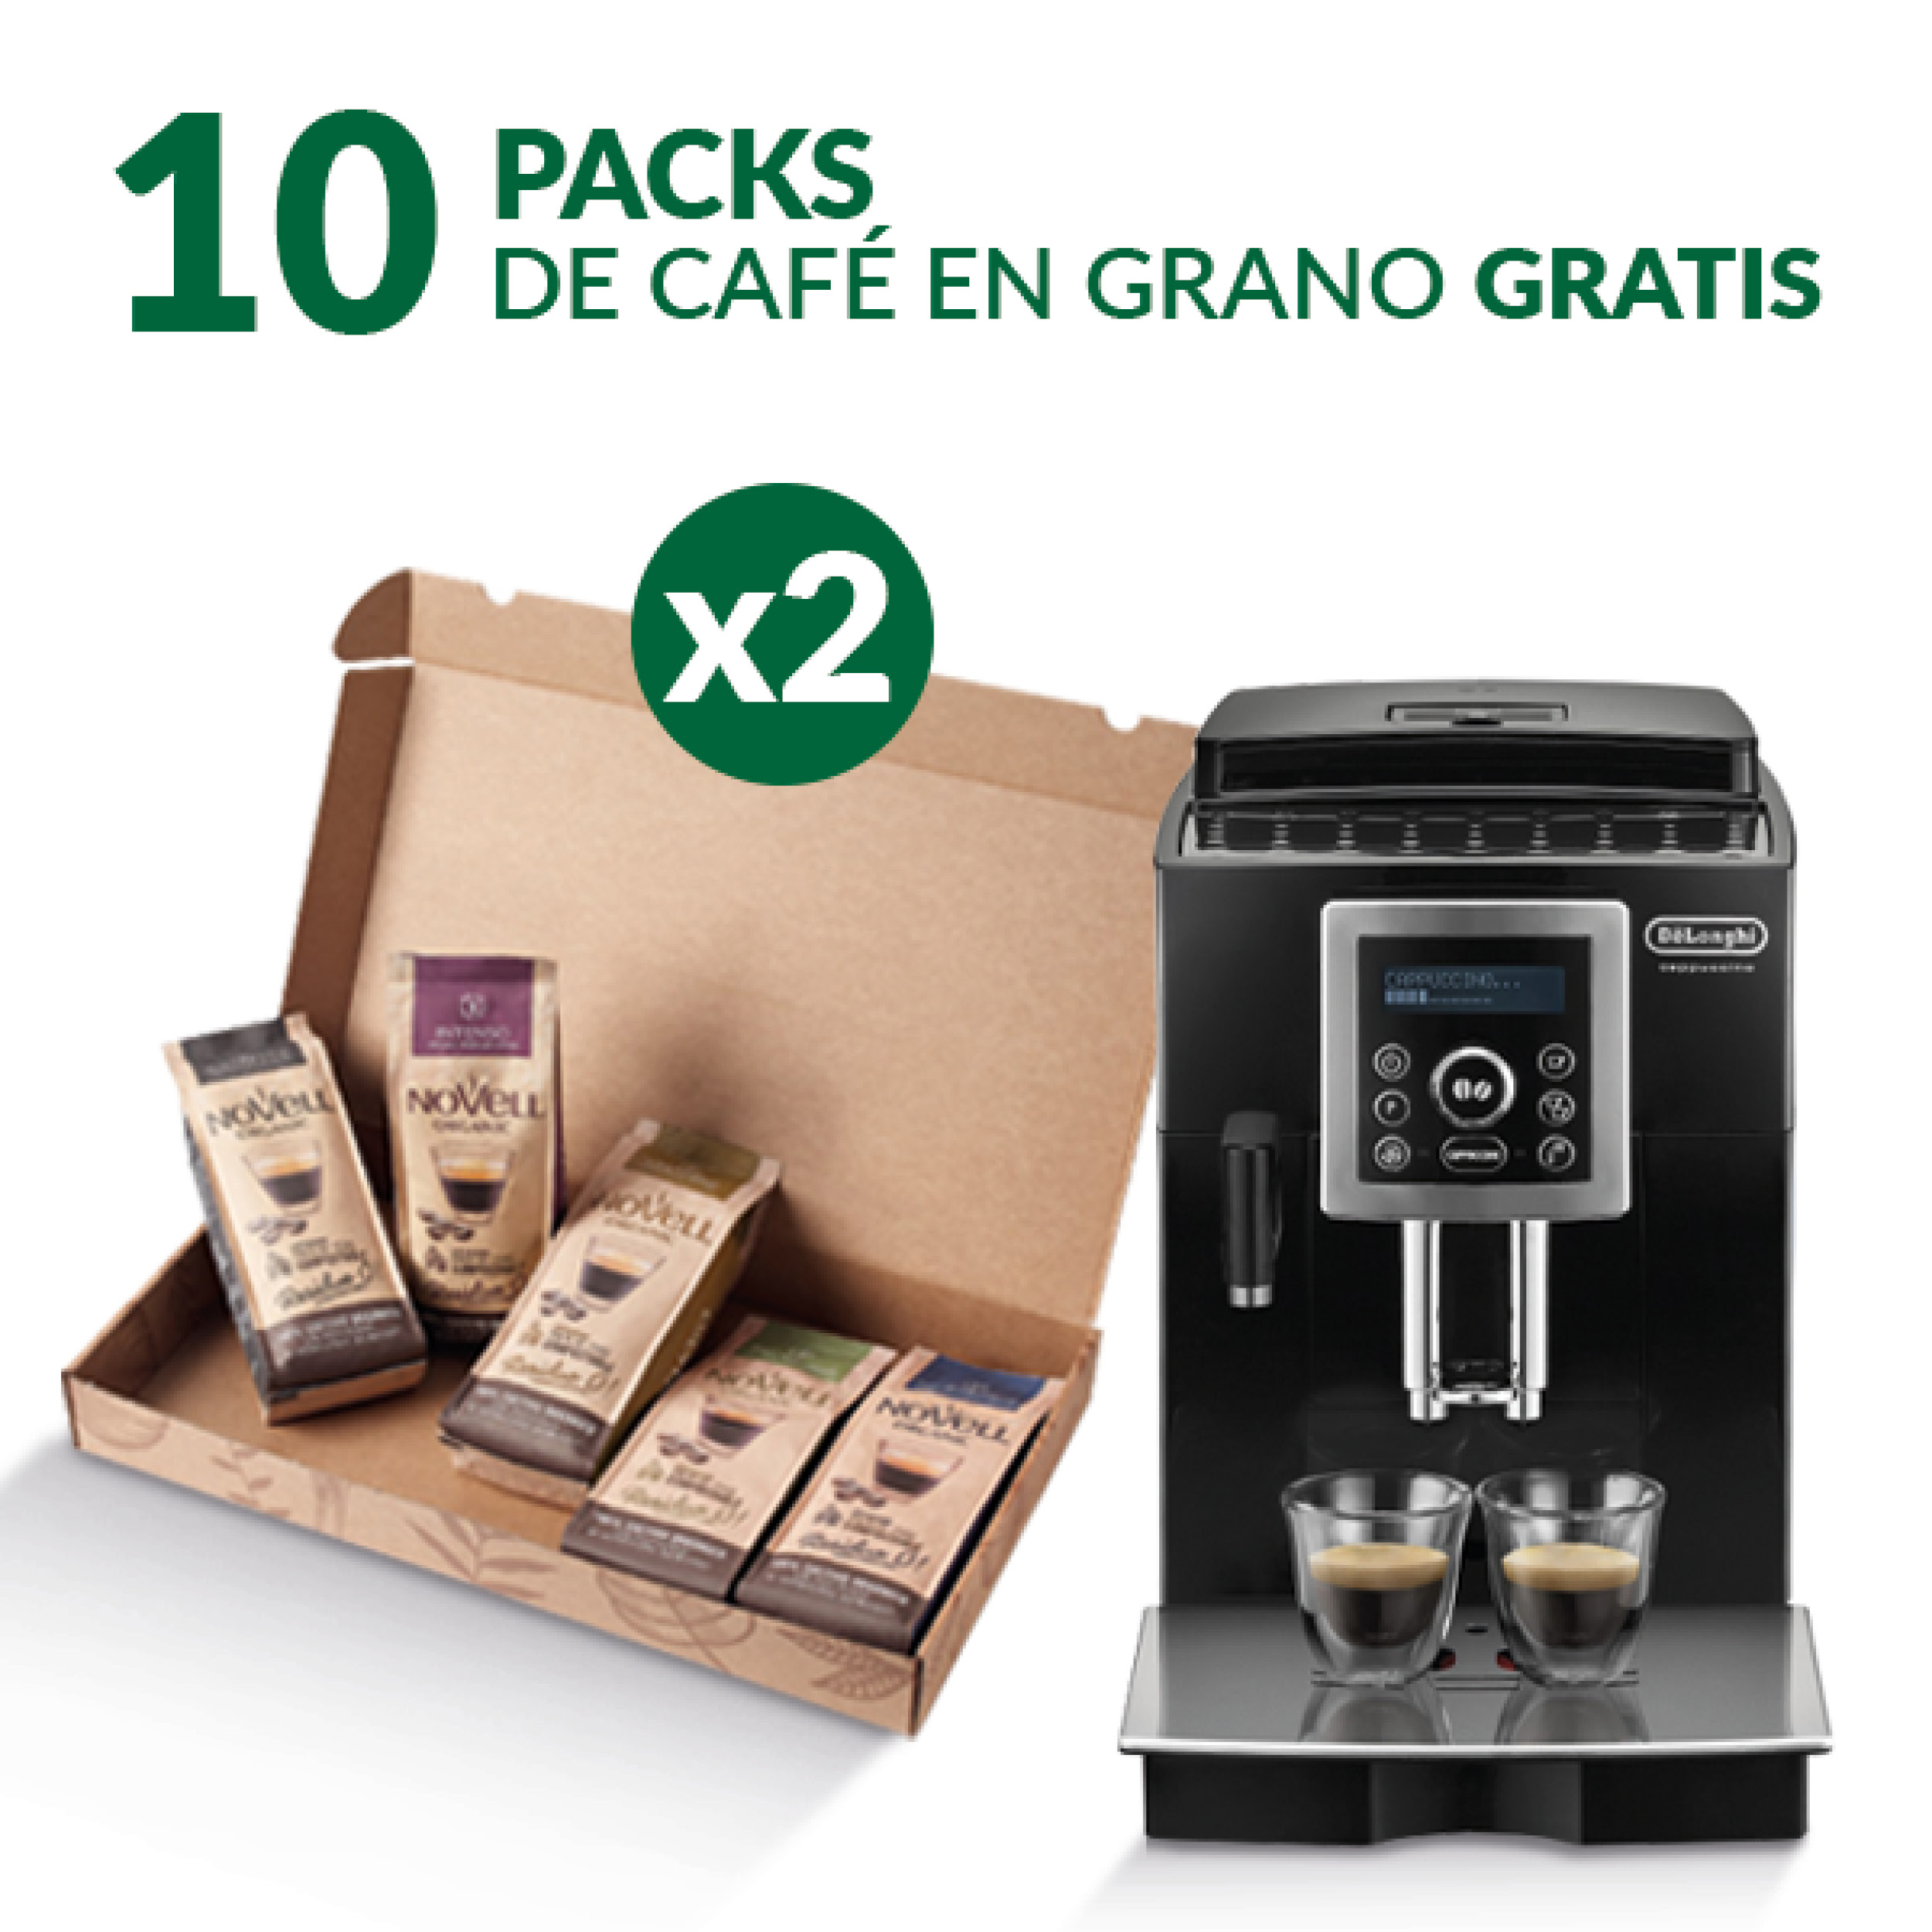 Cafetera Superautomática De'Longhi + 10 Paquetes de Café en Grano de Regalo